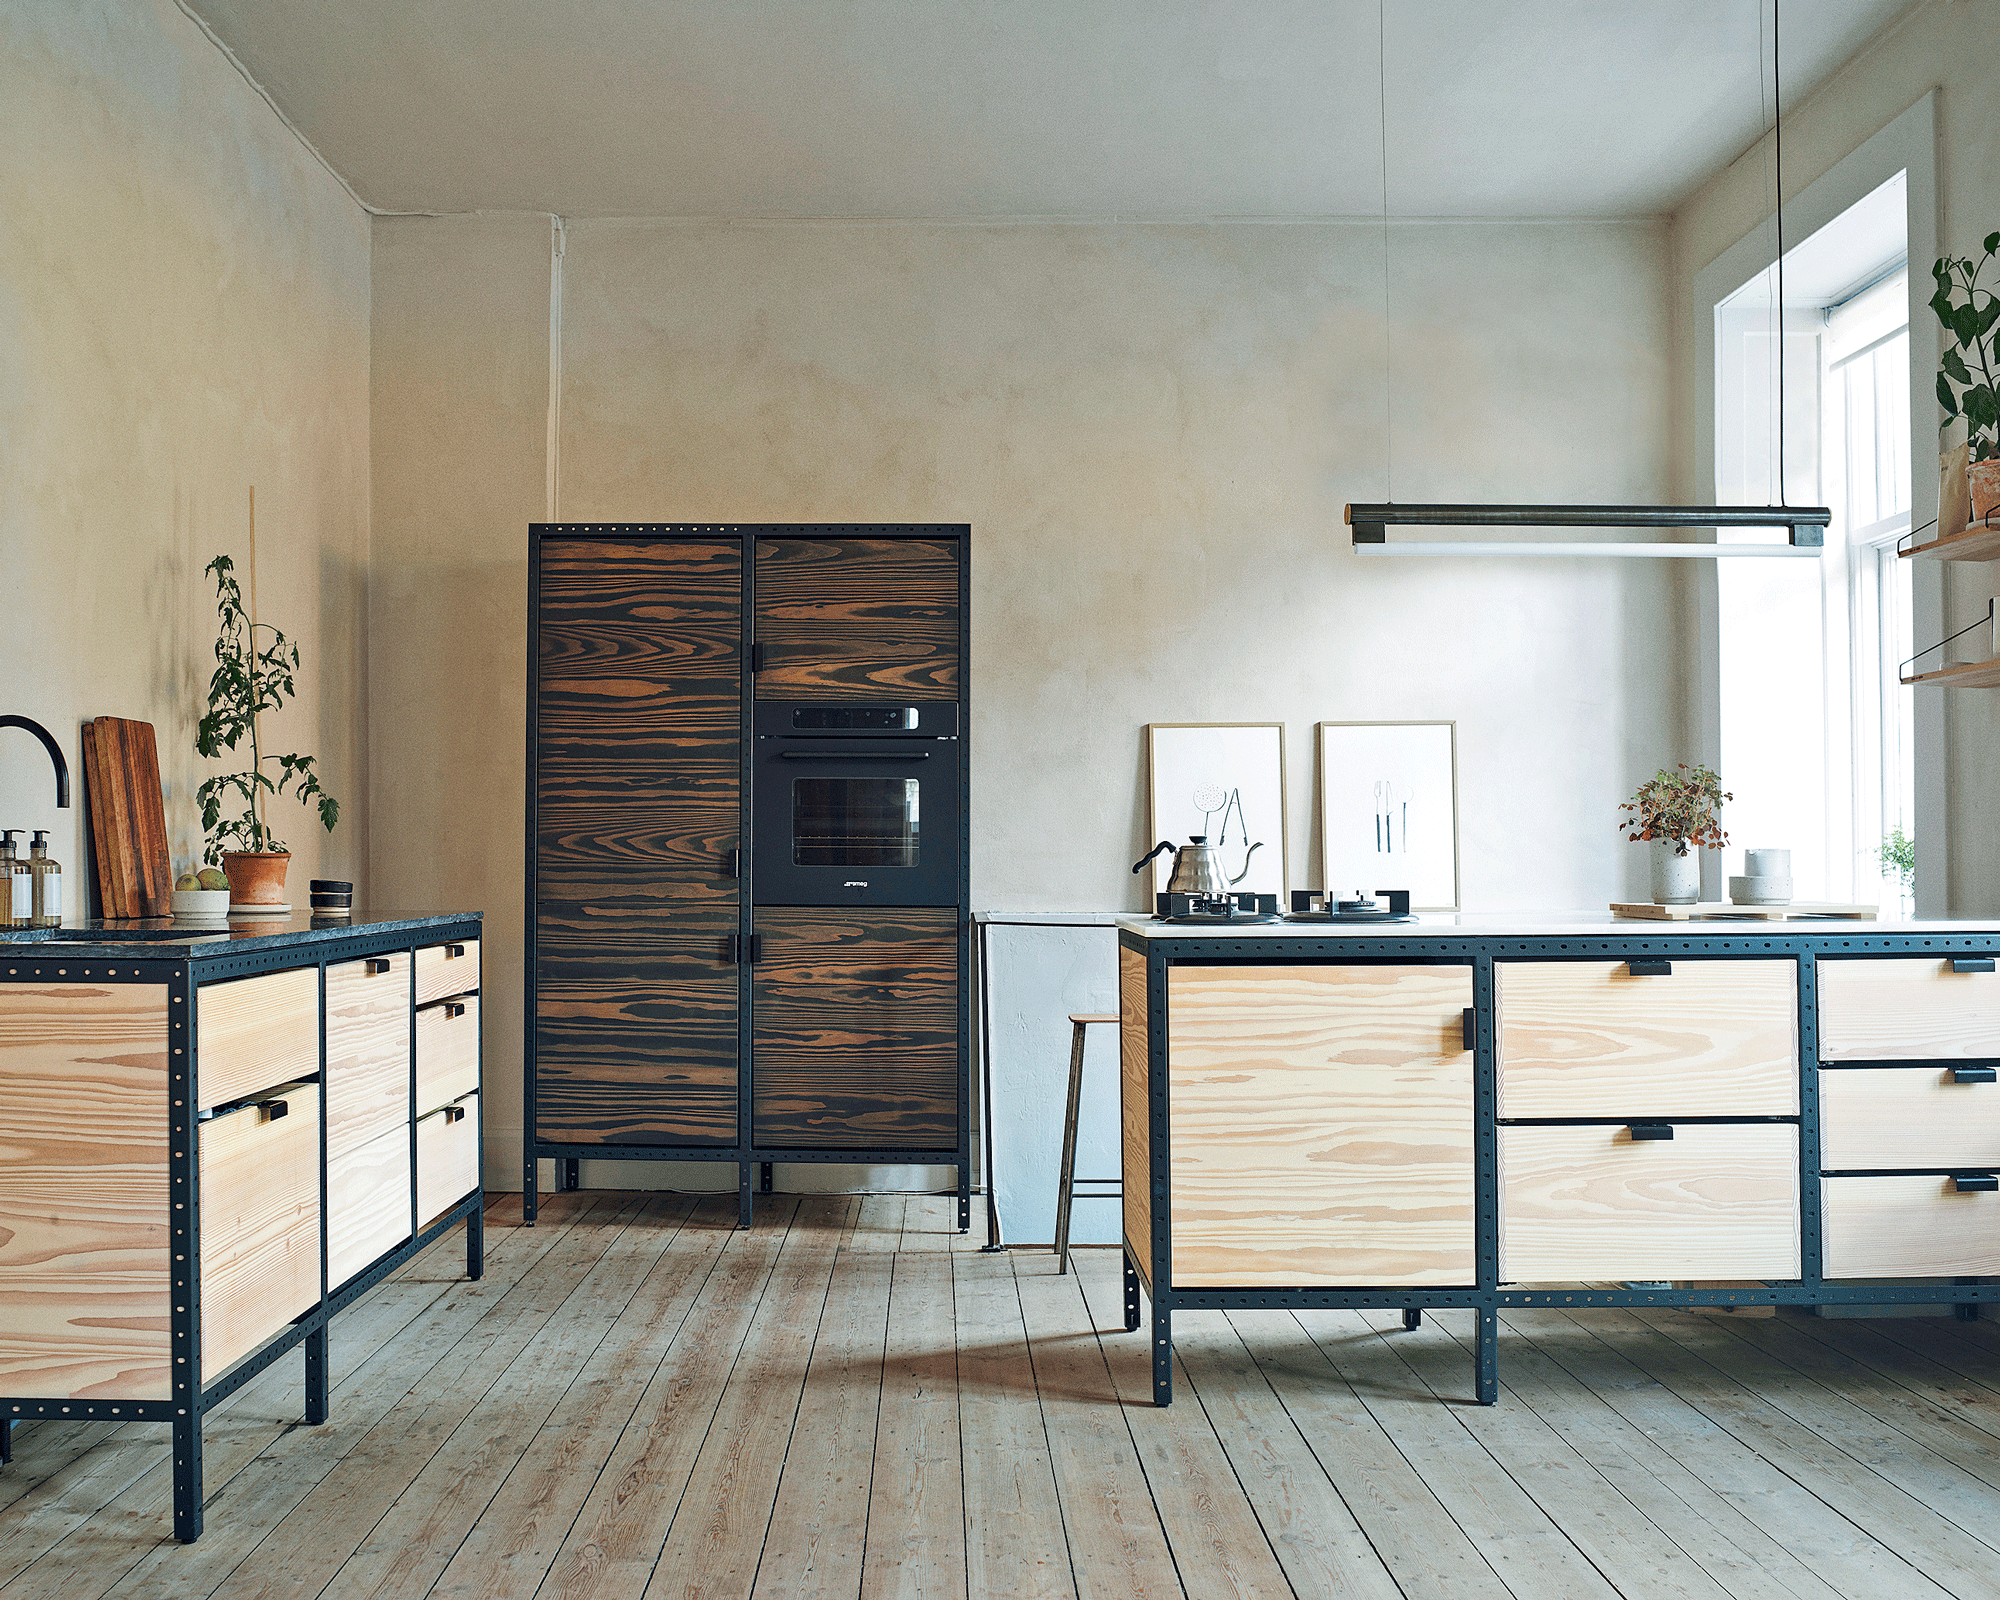 Freestanding wooden kitchen